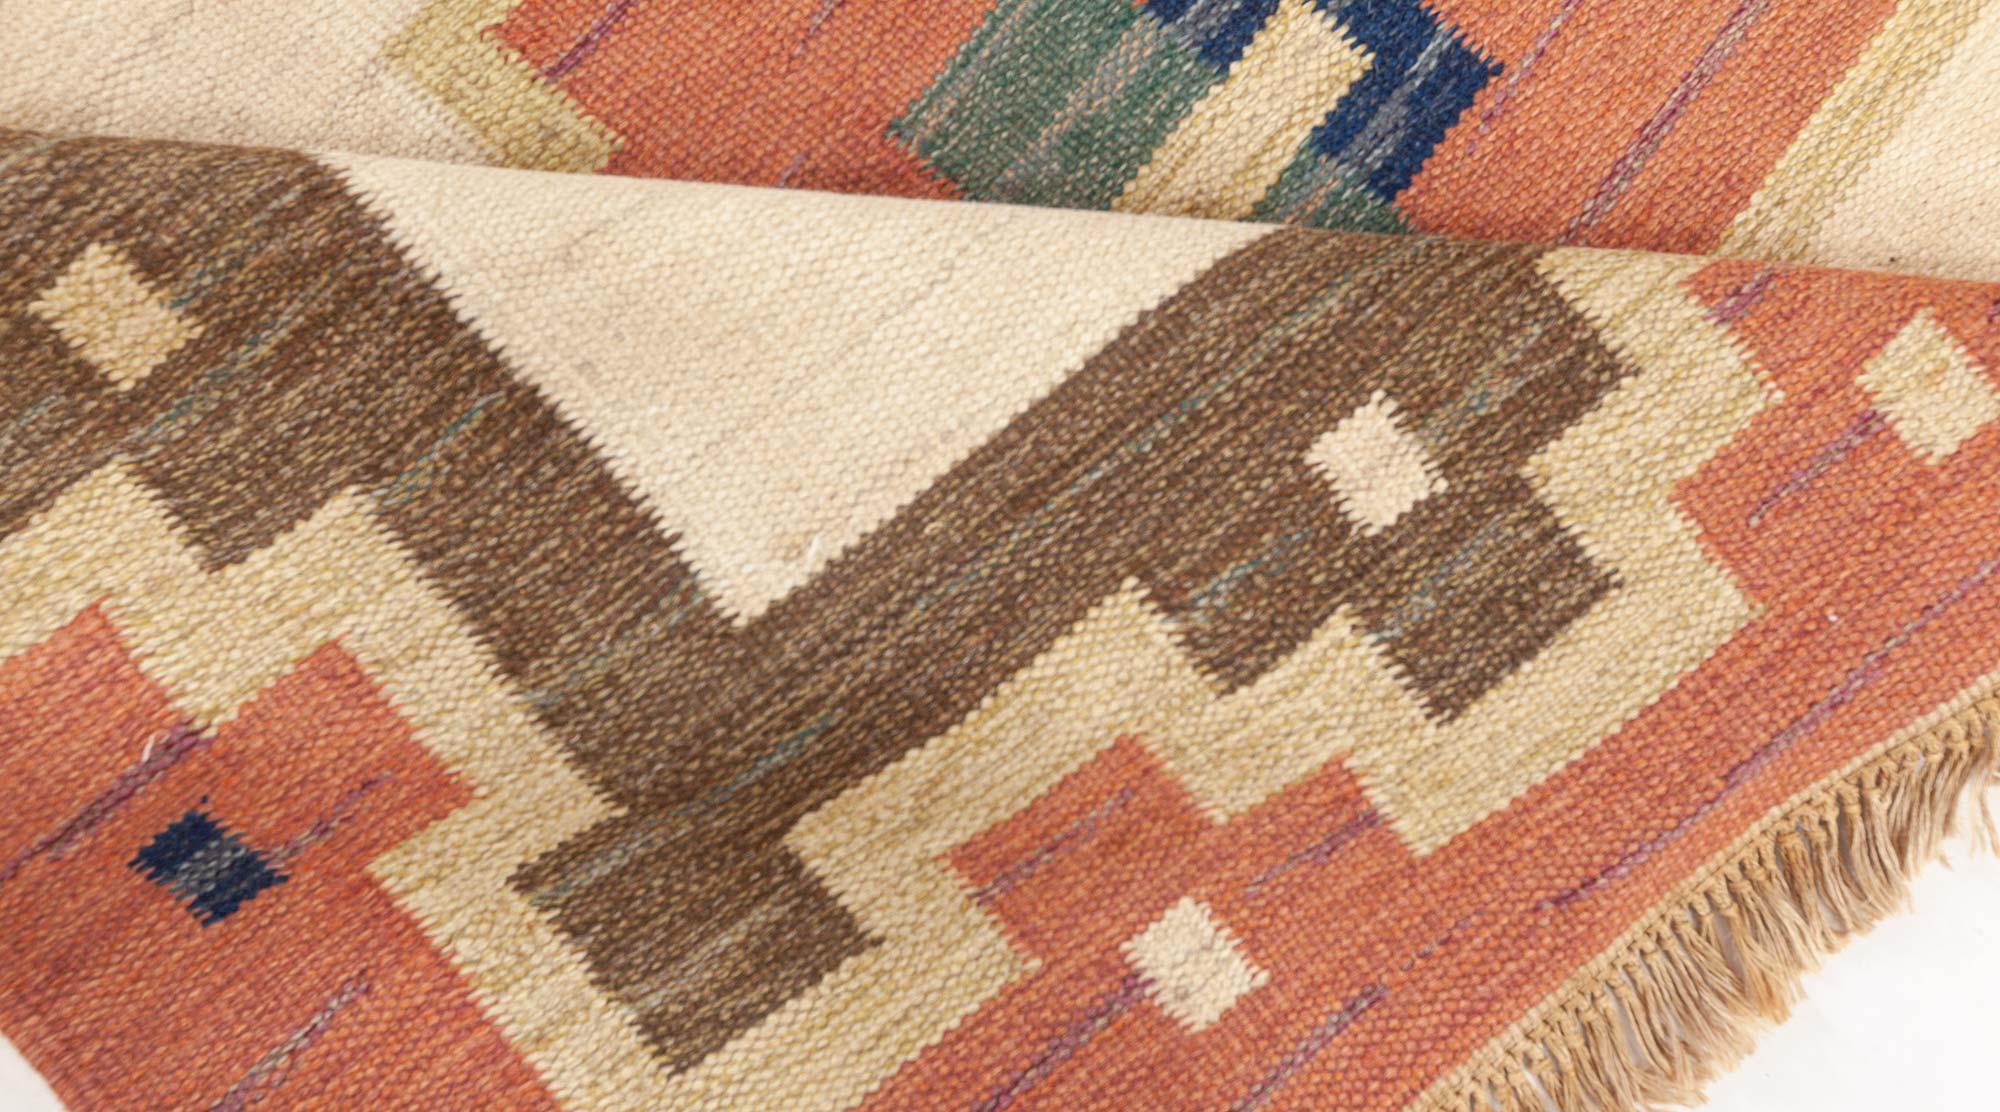 Vintage Swedish flat weave rug signed by (GK)
Size: 5'6